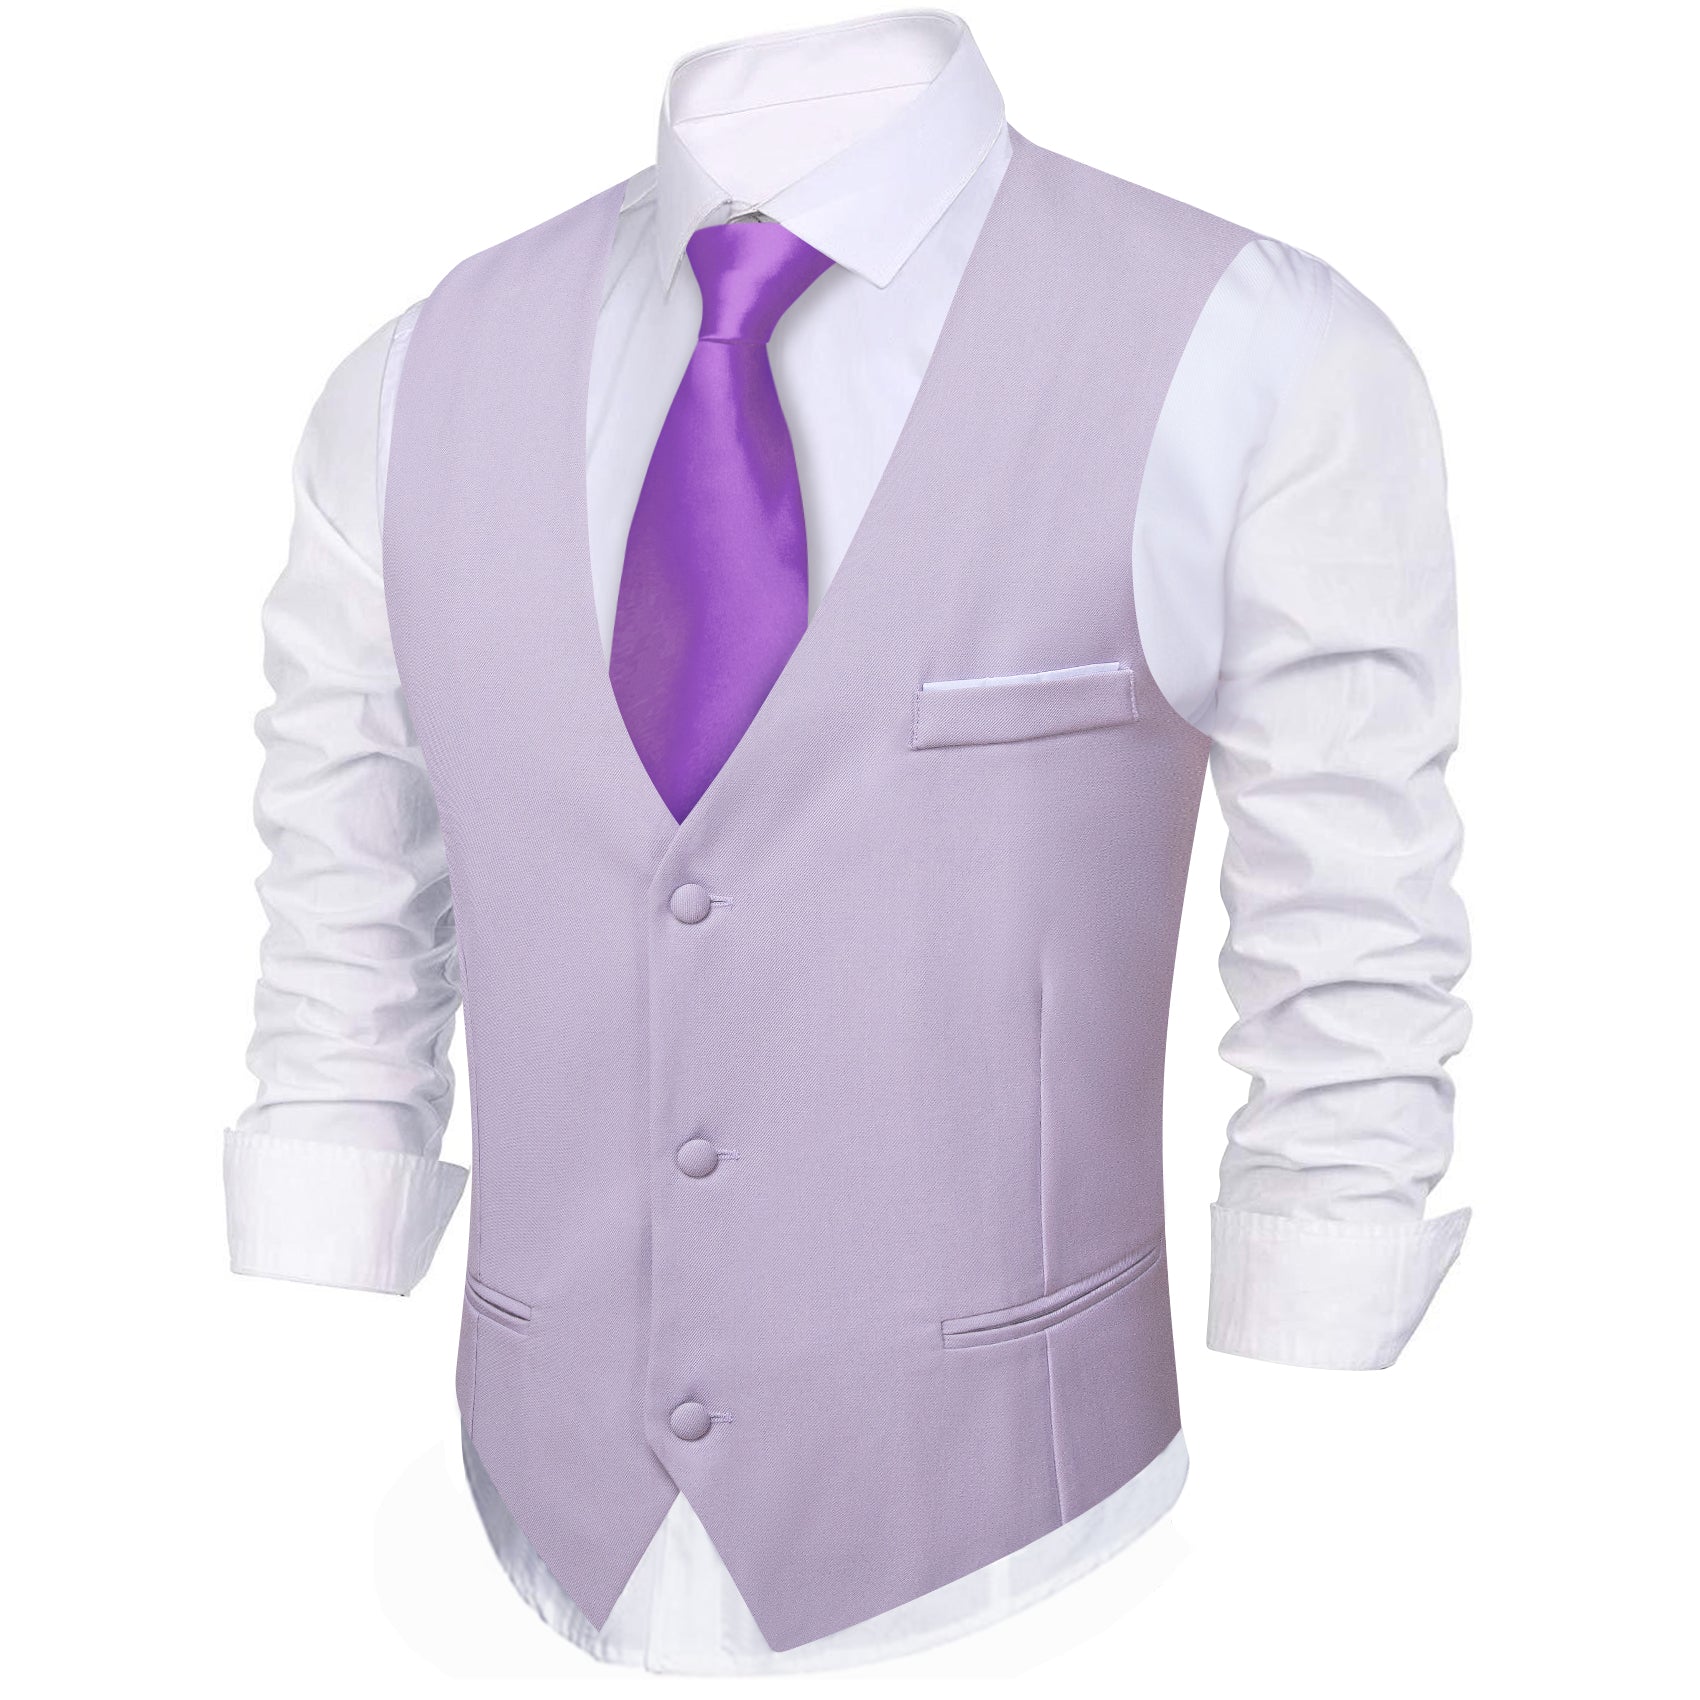 Barry.wang Pale Lilac Solid Business Vest Suit